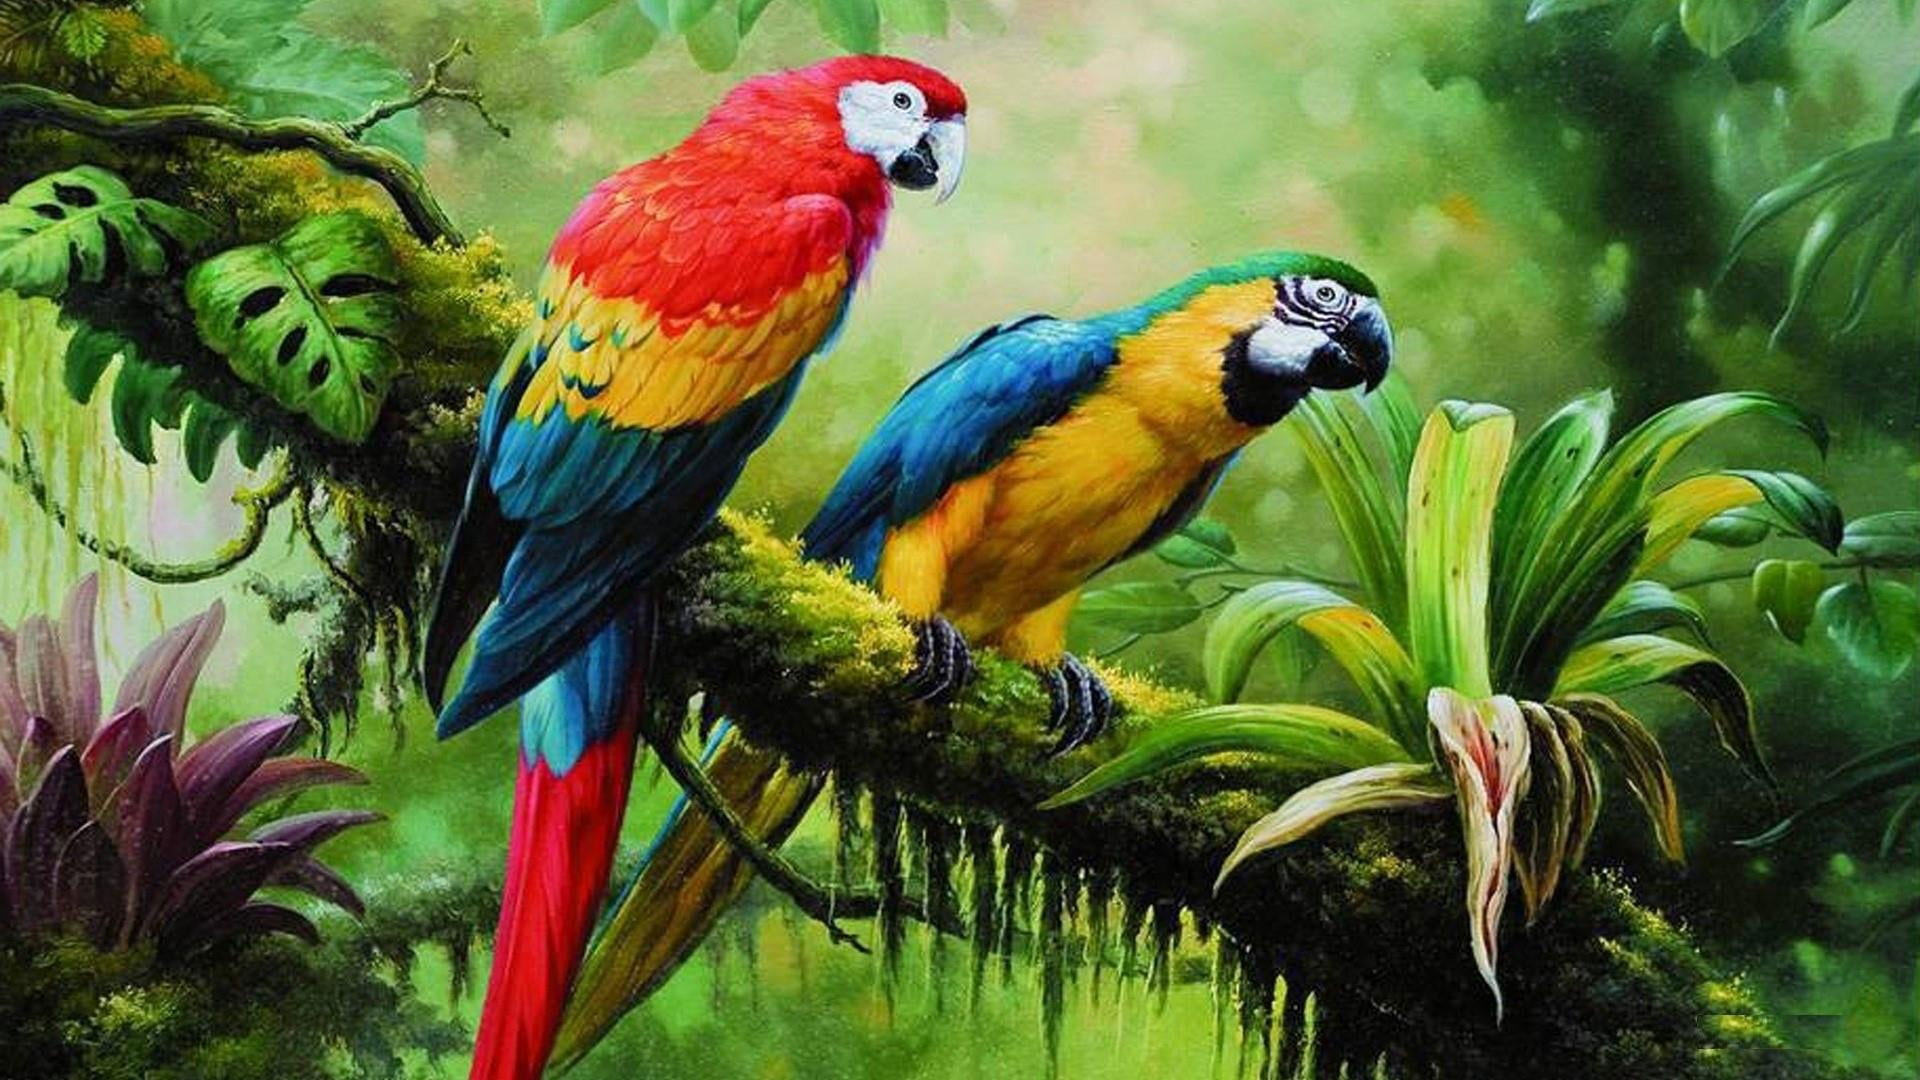 Bird wallpaper, parrot, jungle, brach, parrots, painting art, birds, tropical forest